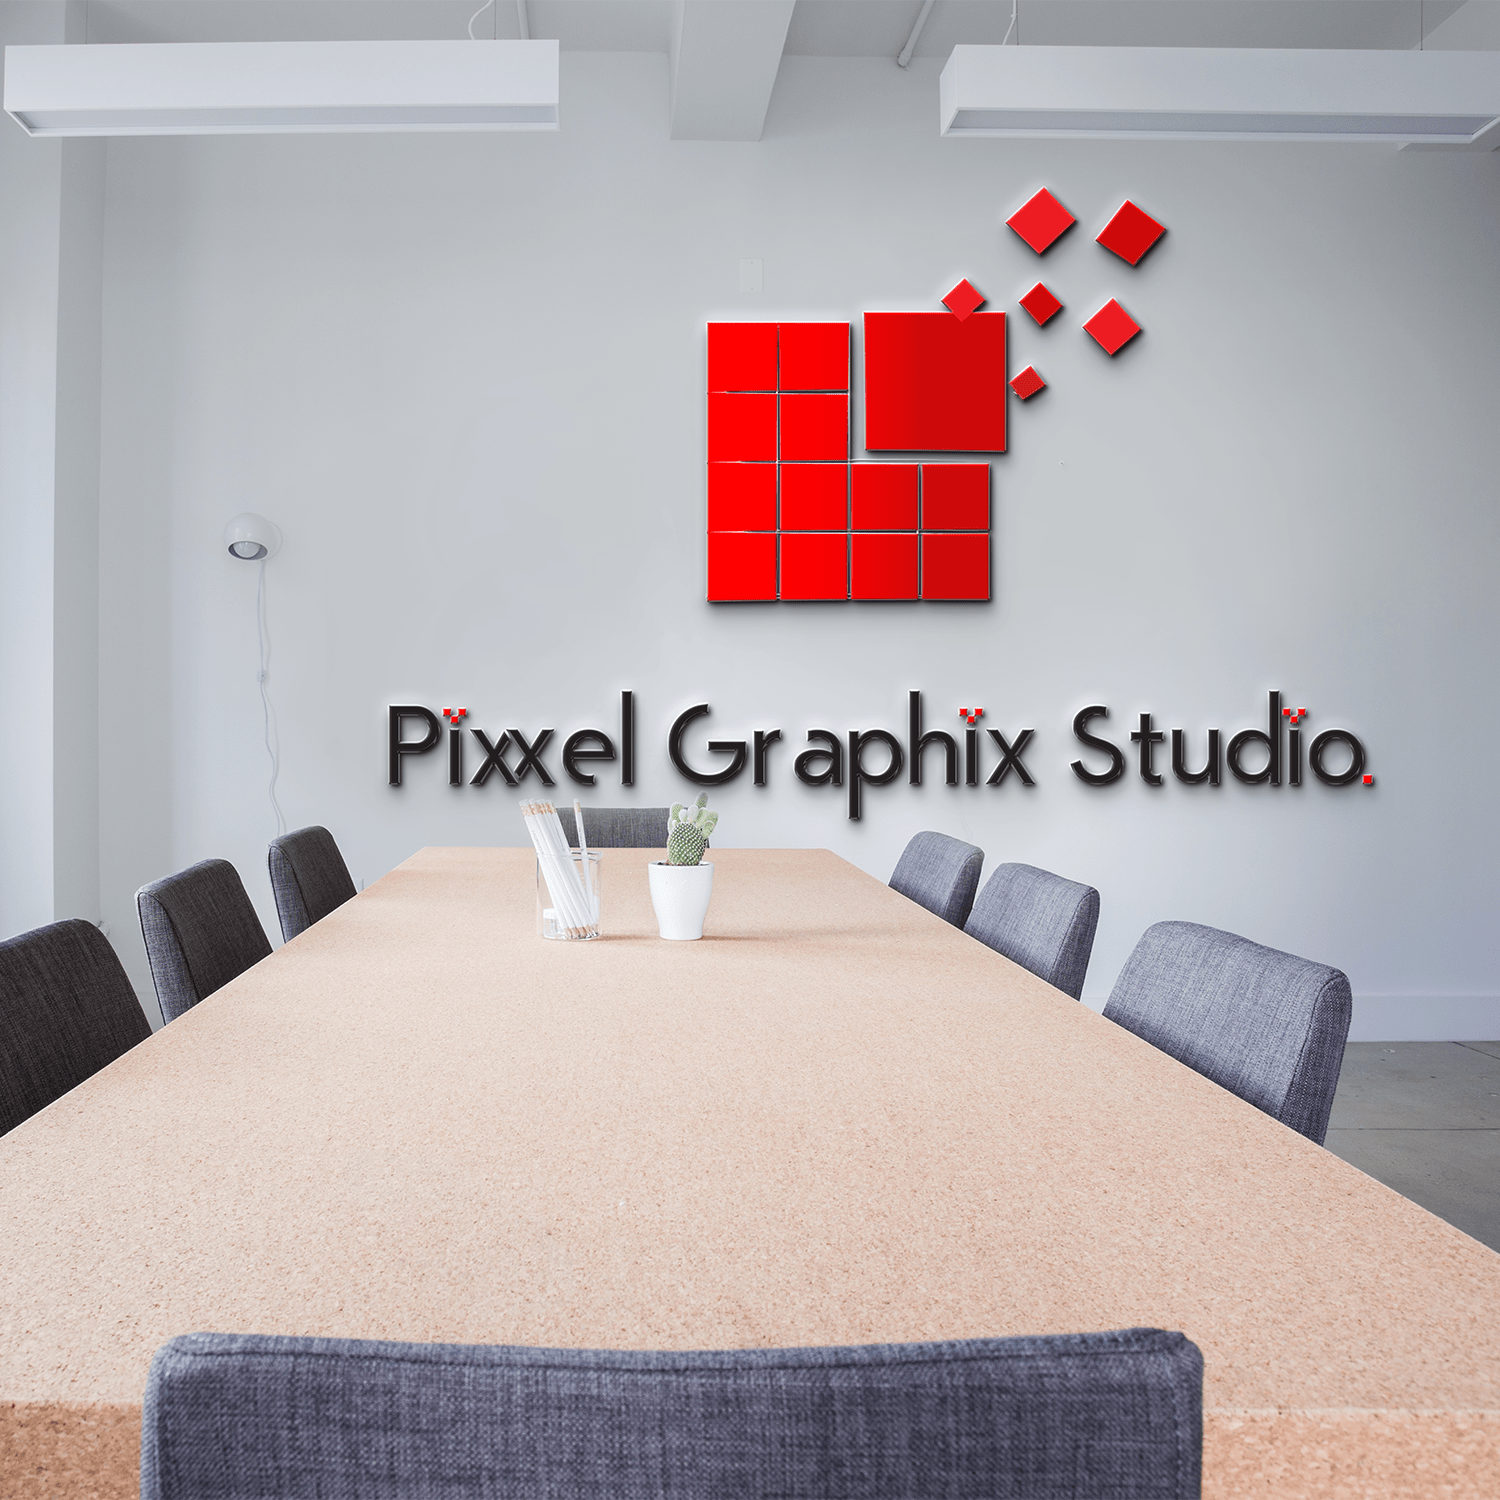 Pixxelgraphixstudio